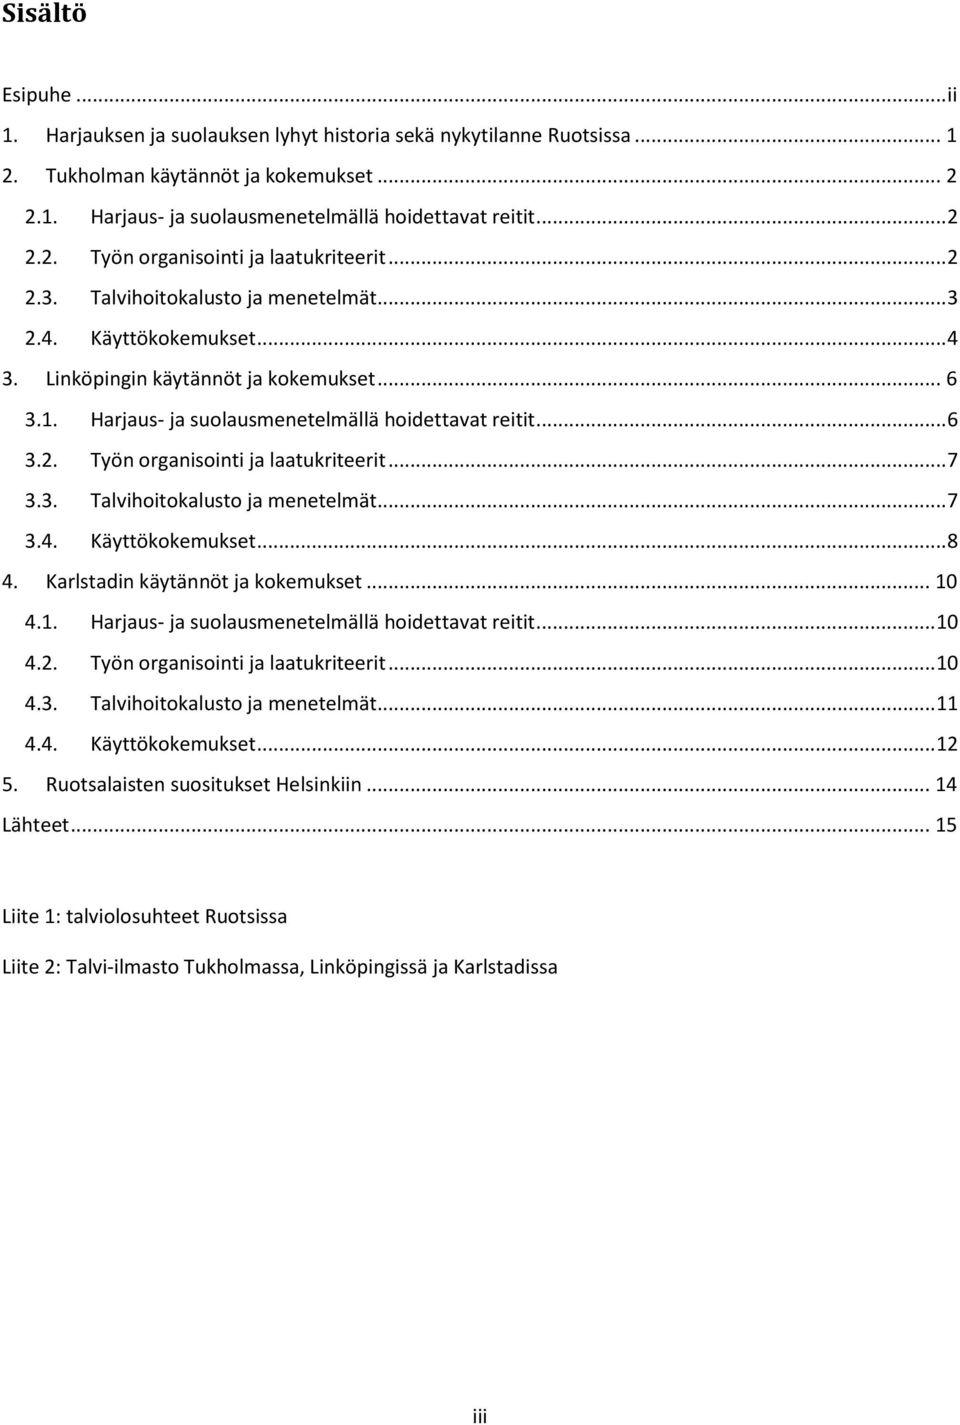 .. 7 3.3. Talvihoitokalusto ja menetelmät... 7 3.4. Käyttökokemukset... 8 4. Karlstadin käytännöt ja kokemukset... 10 4.1. Harjaus- ja suolausmenetelmällä hoidettavat reitit... 10 4.2.